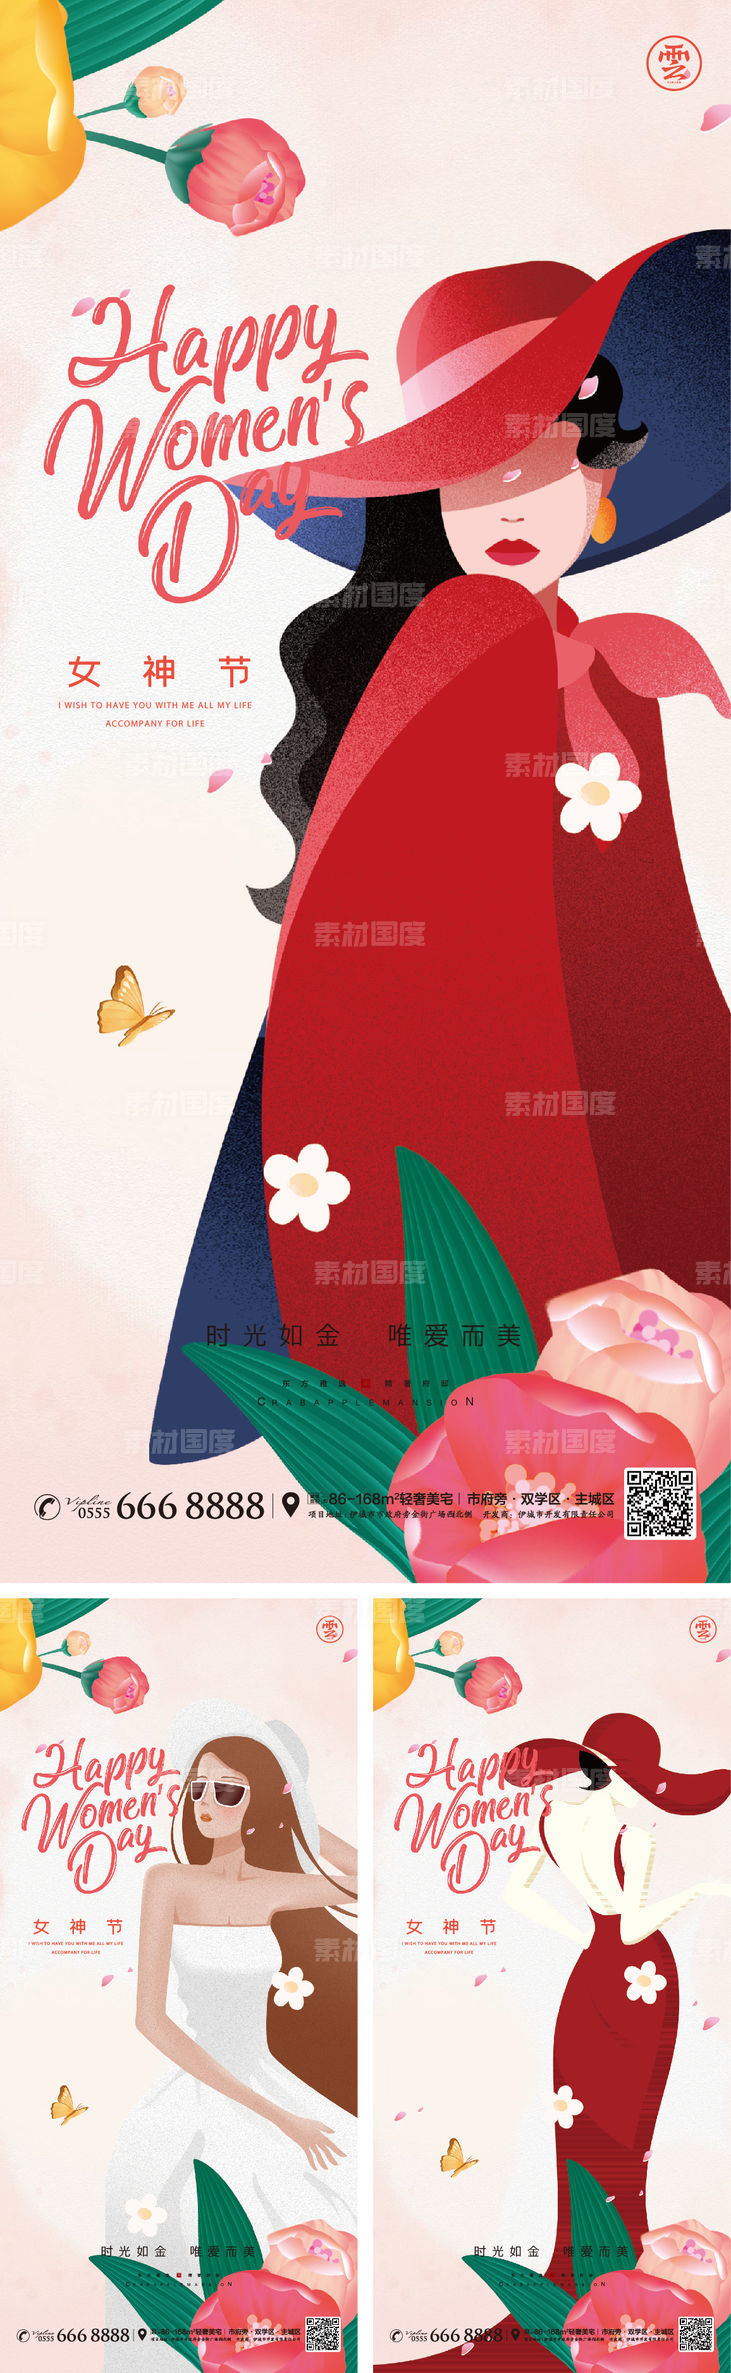 38 妇女节 女神节 女王 花朵 女人 插画 手绘 蝴蝶